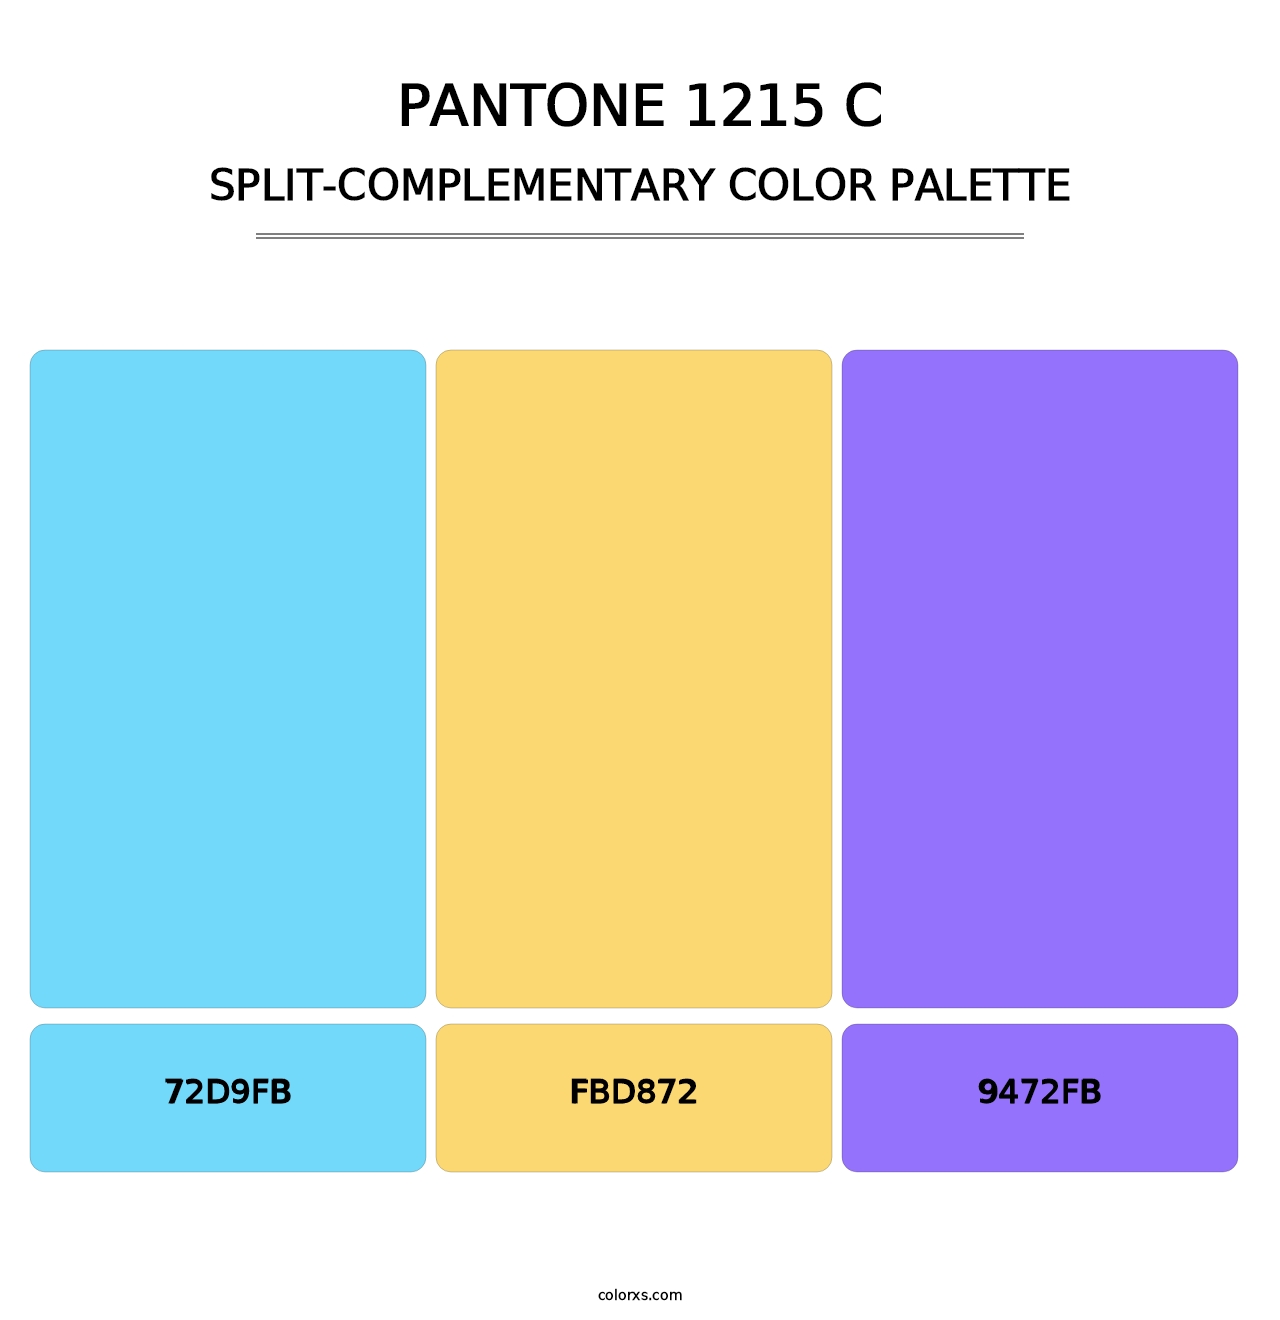 PANTONE 1215 C - Split-Complementary Color Palette